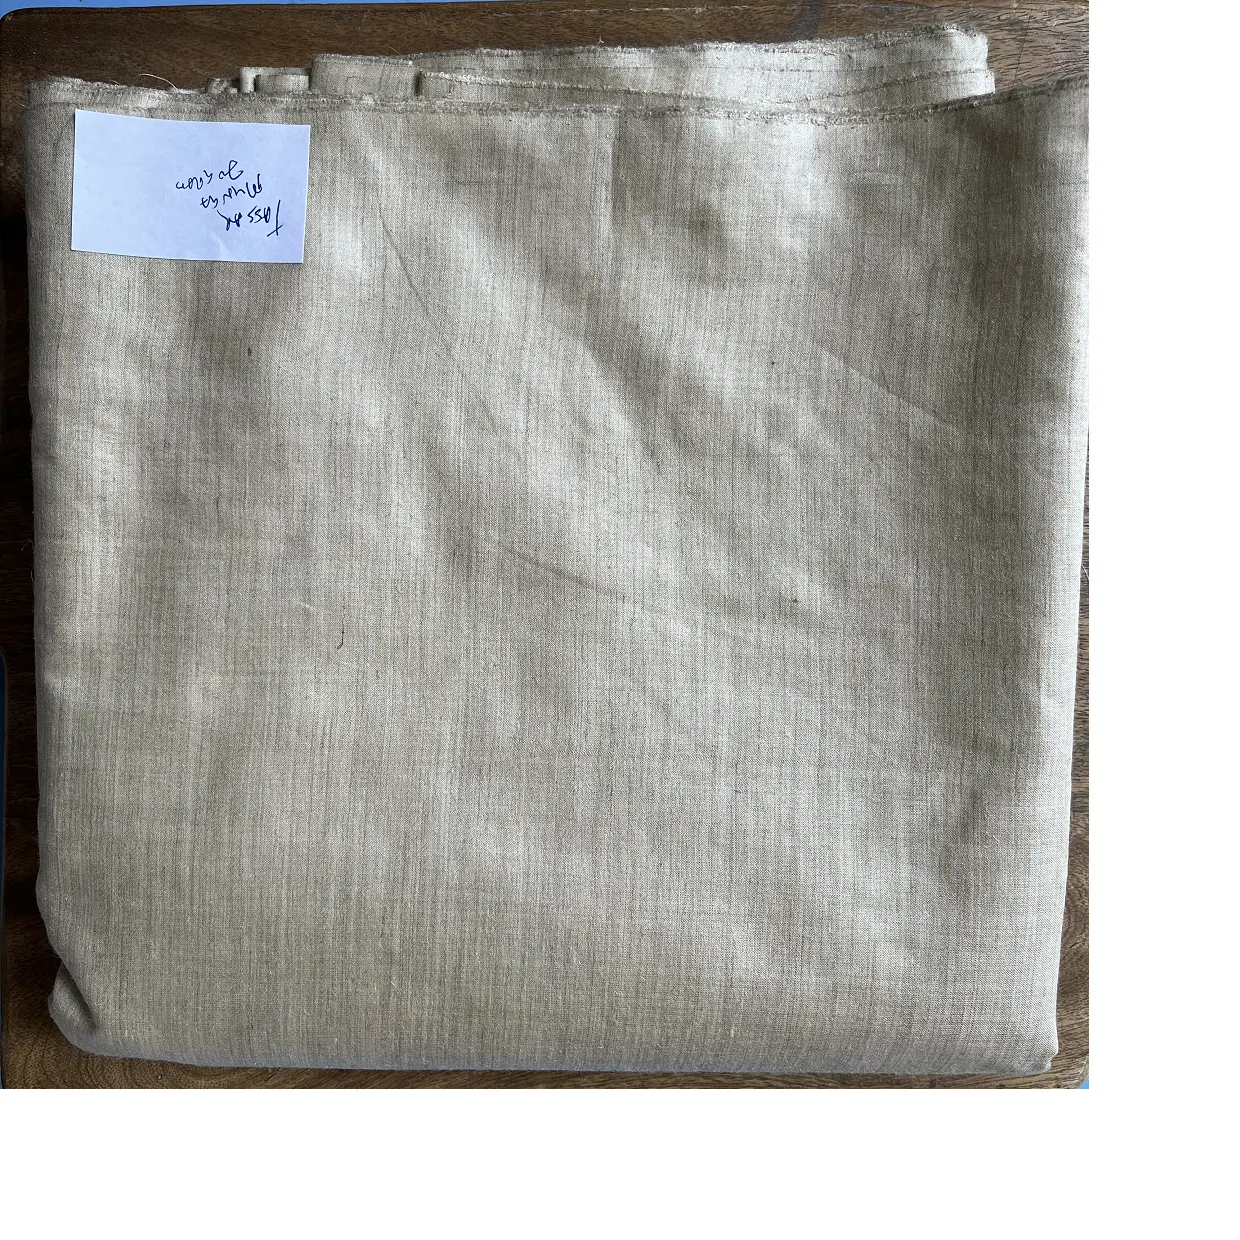 カスタムメイド100% tussar mungaシルク70グラム生地手織り製、耐久性と持続可能な品質の生地家庭用。